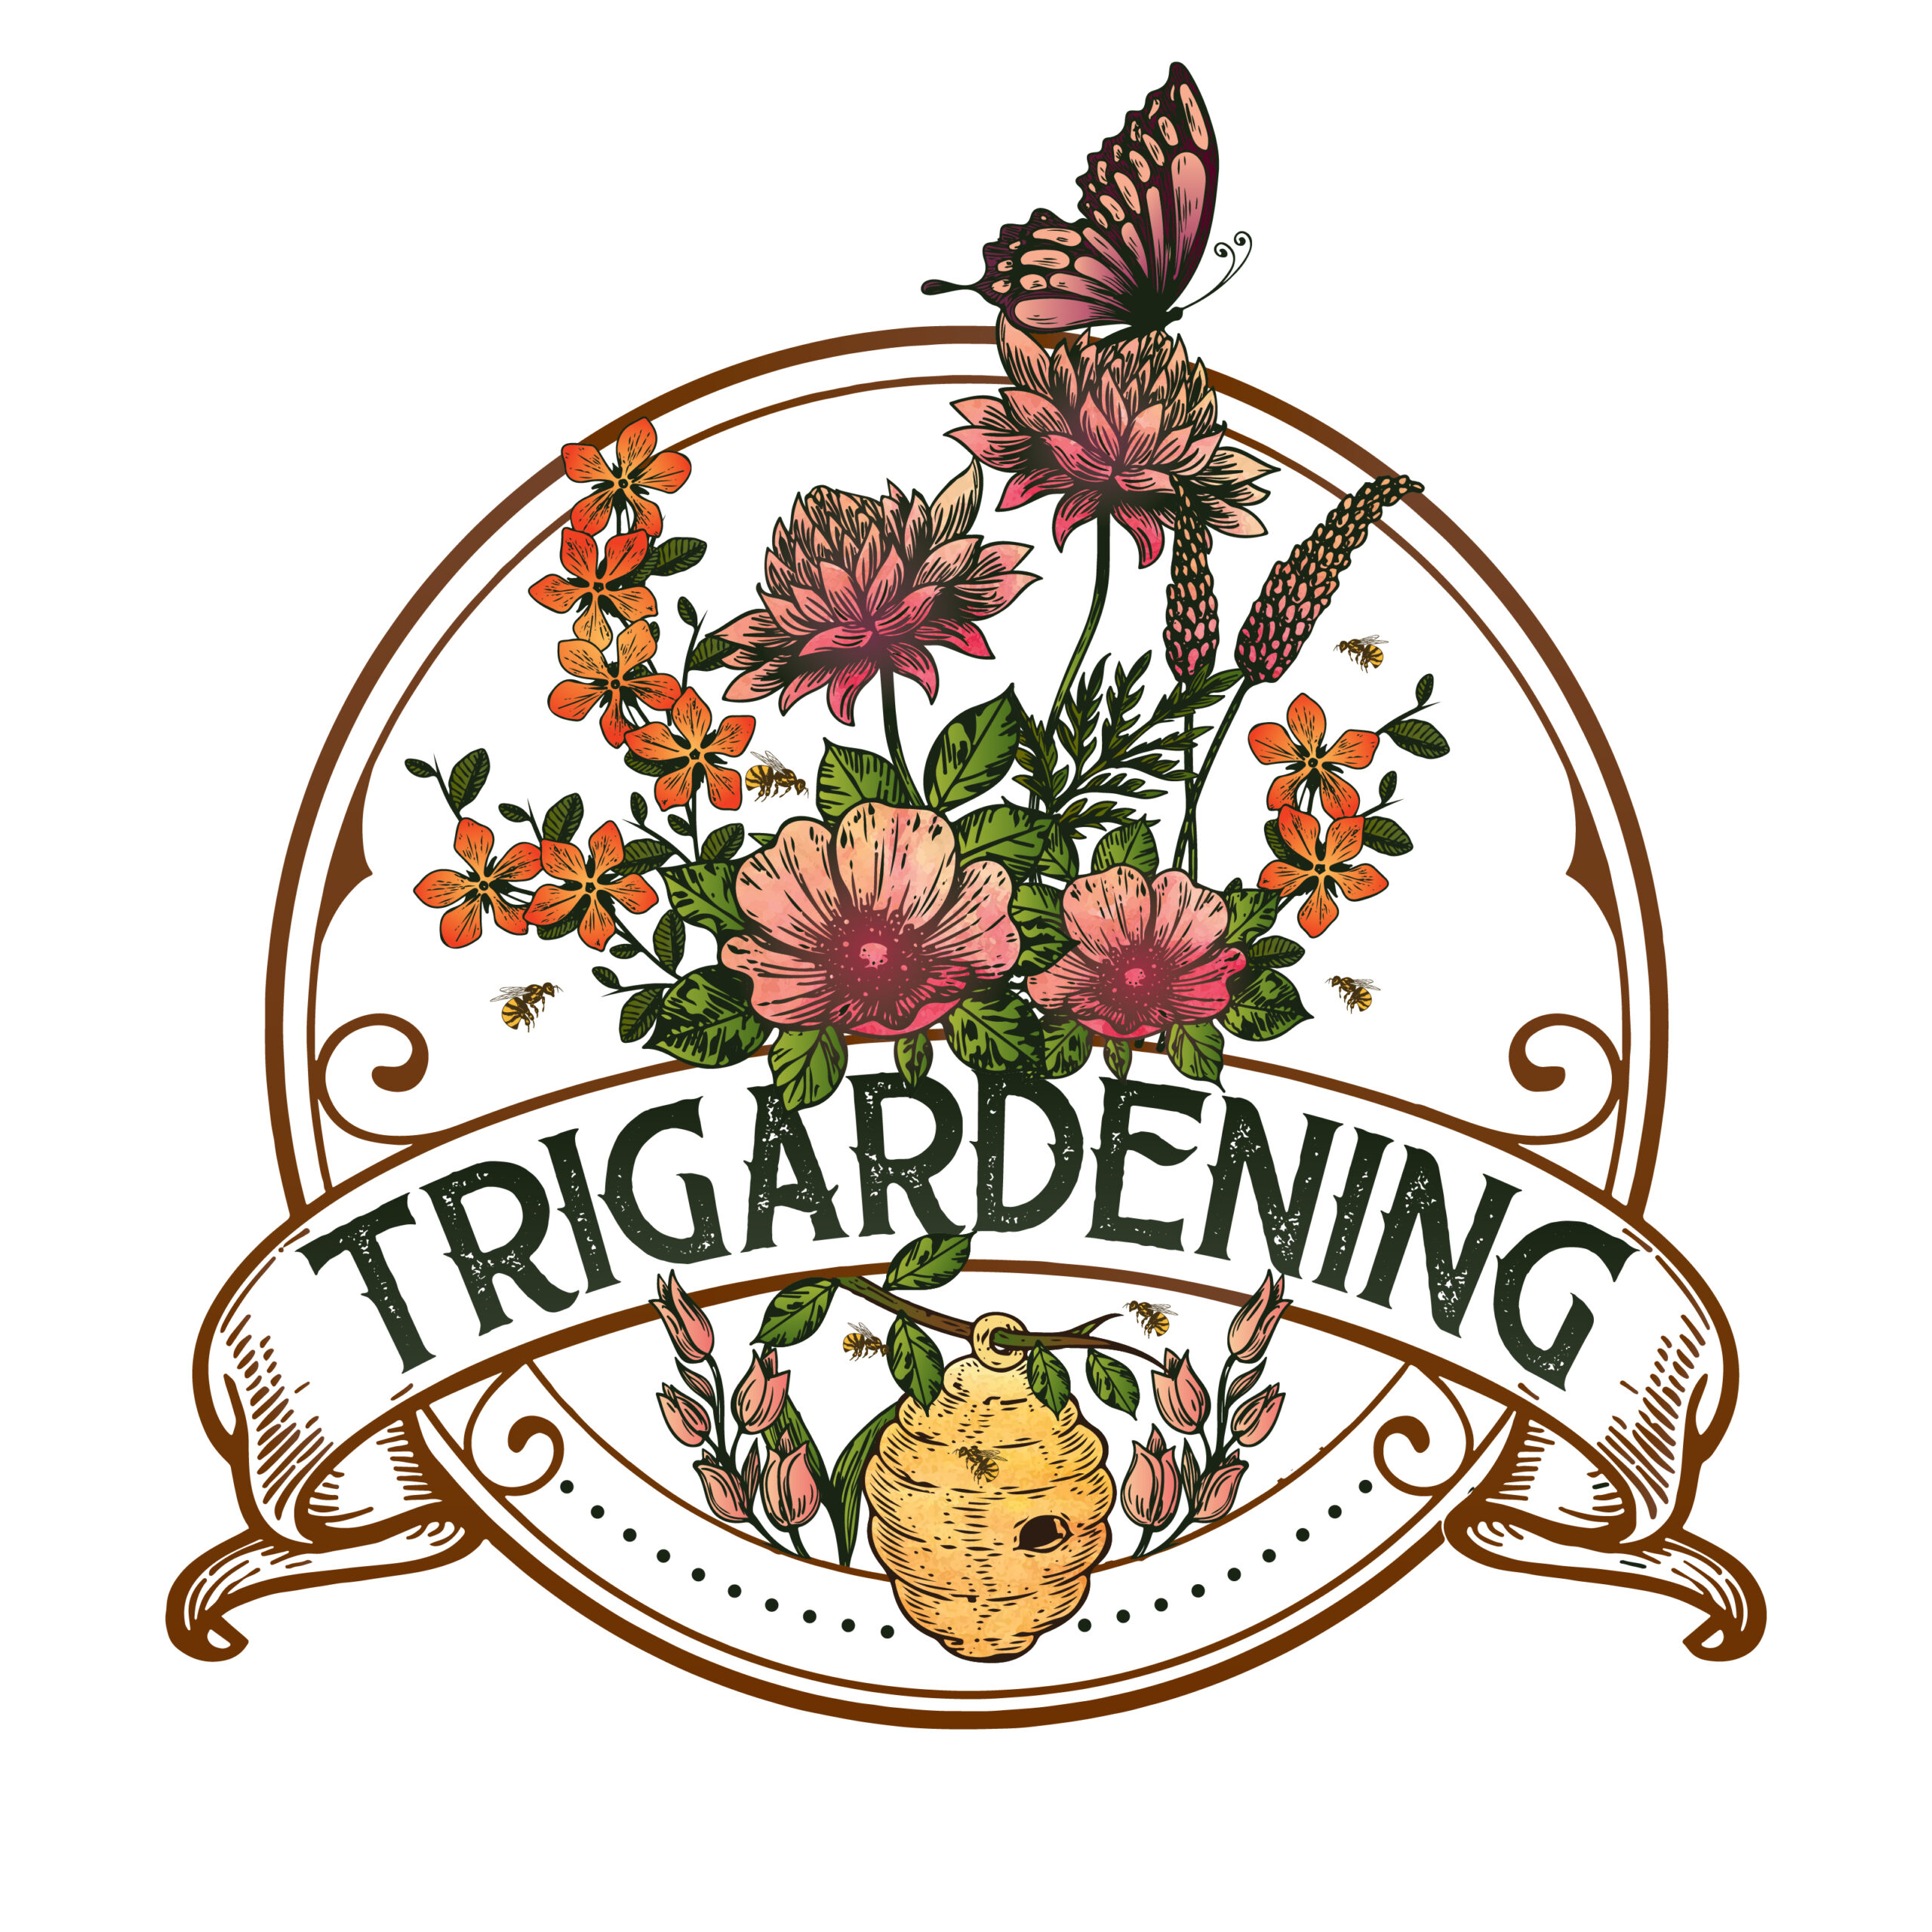 TriGardening Logo